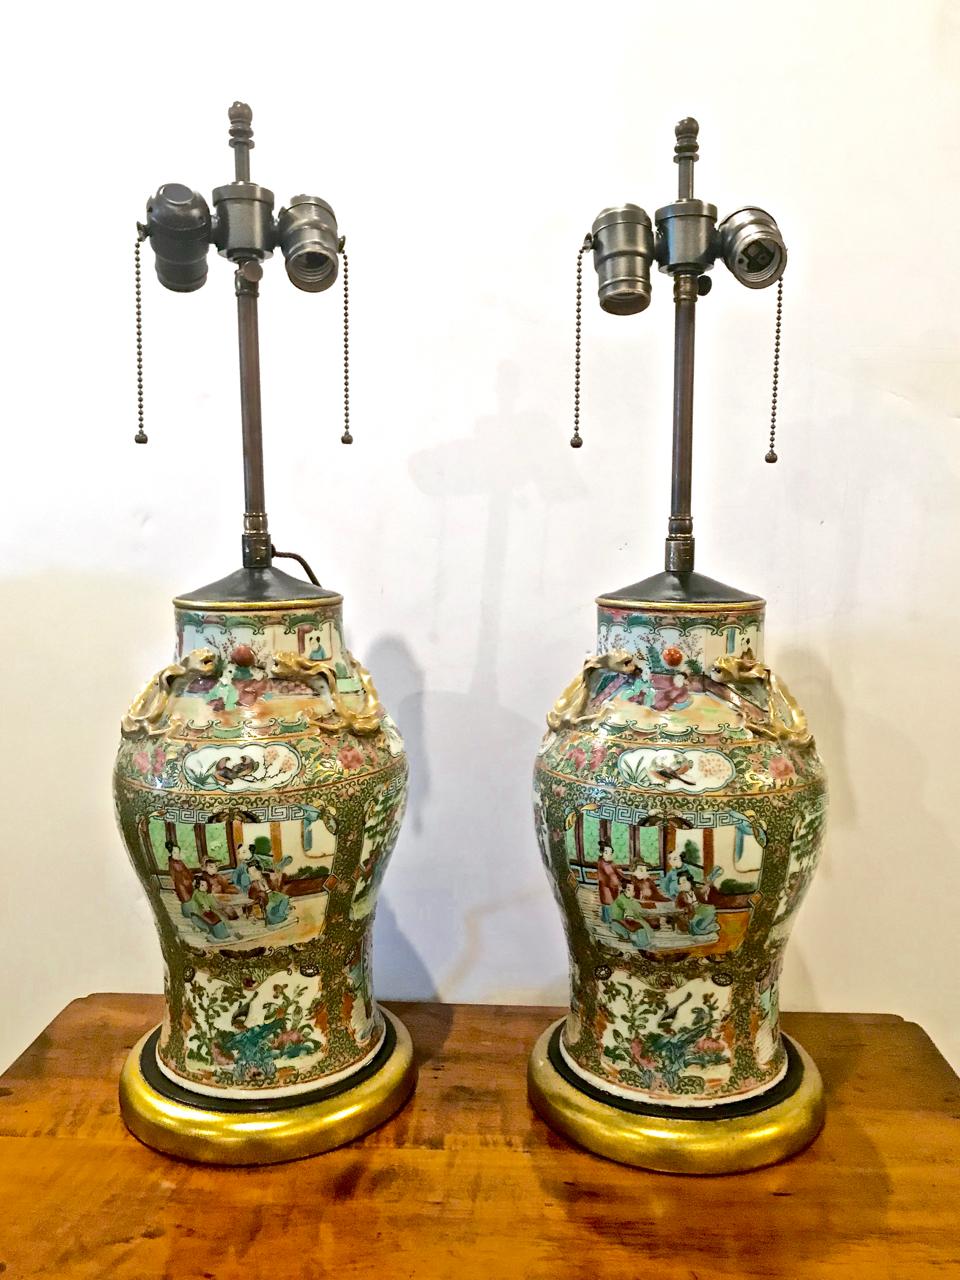 Dies ist ein gutes Paar von Rose Canton Vasen aus der Mitte des 19. Jahrhunderts, die als Lampen verwendet wurden. Die Vasen sind fein bemalt, befinden sich in einem ausgezeichneten Zustand und wurden nicht für die elektrischen Anschlüsse gebohrt.